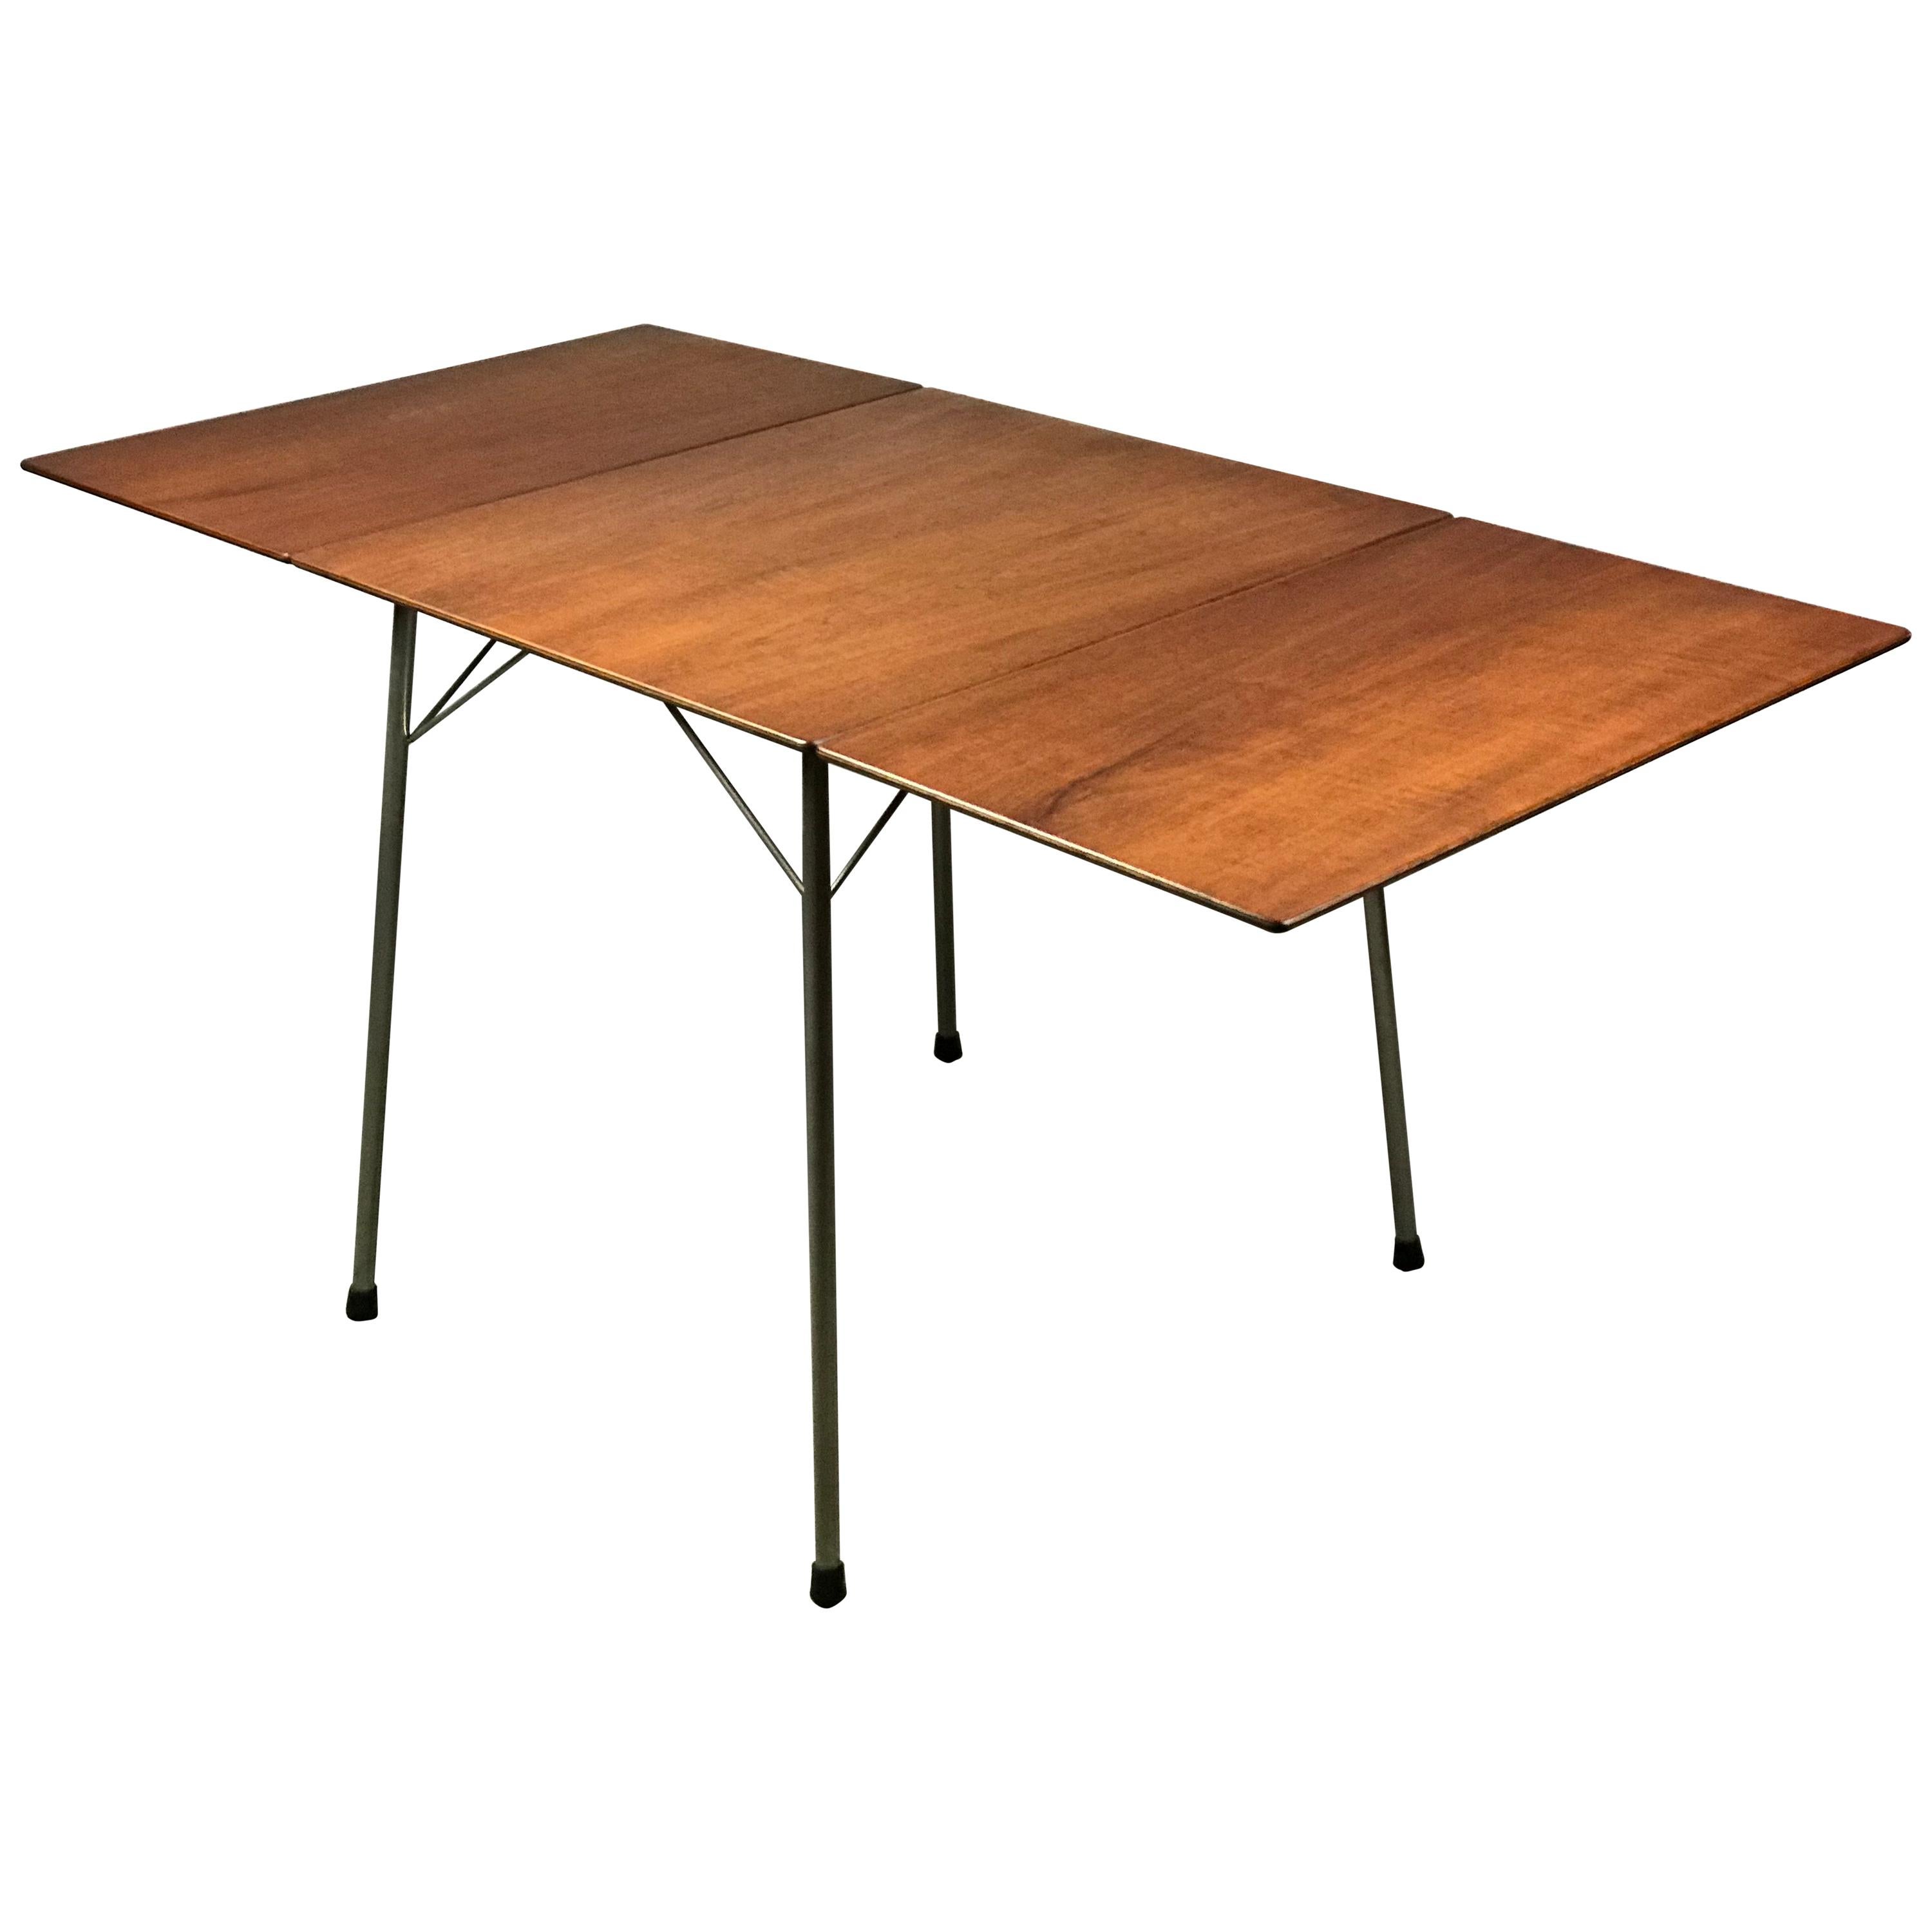 Danish Teak Drop-Leaf Dining Table by Arne Jacobsen for Fritz Hansen Model 3601